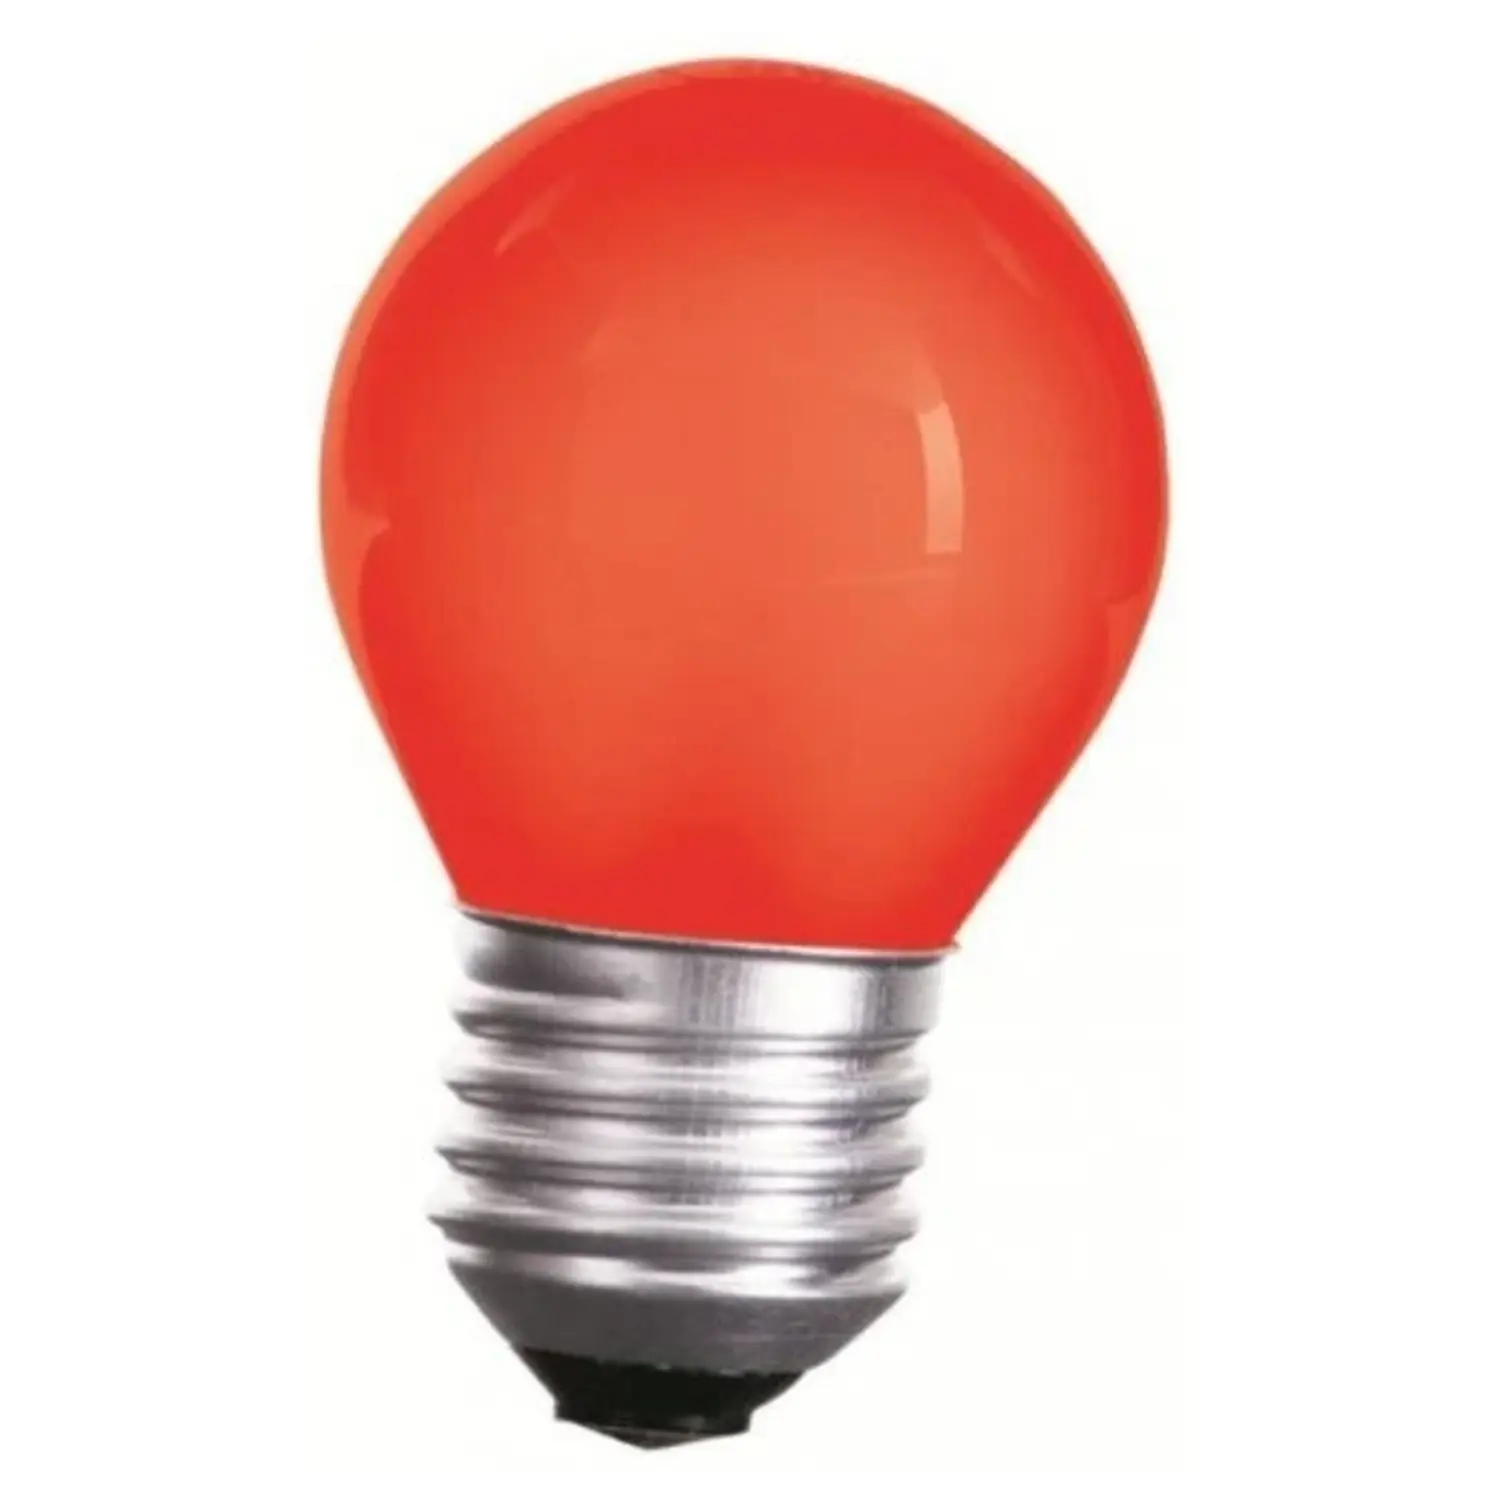 immagine del prodotto lampadina led mini globo 1 watt rossa CE 220-240 volt 15000 ore spe woj11795